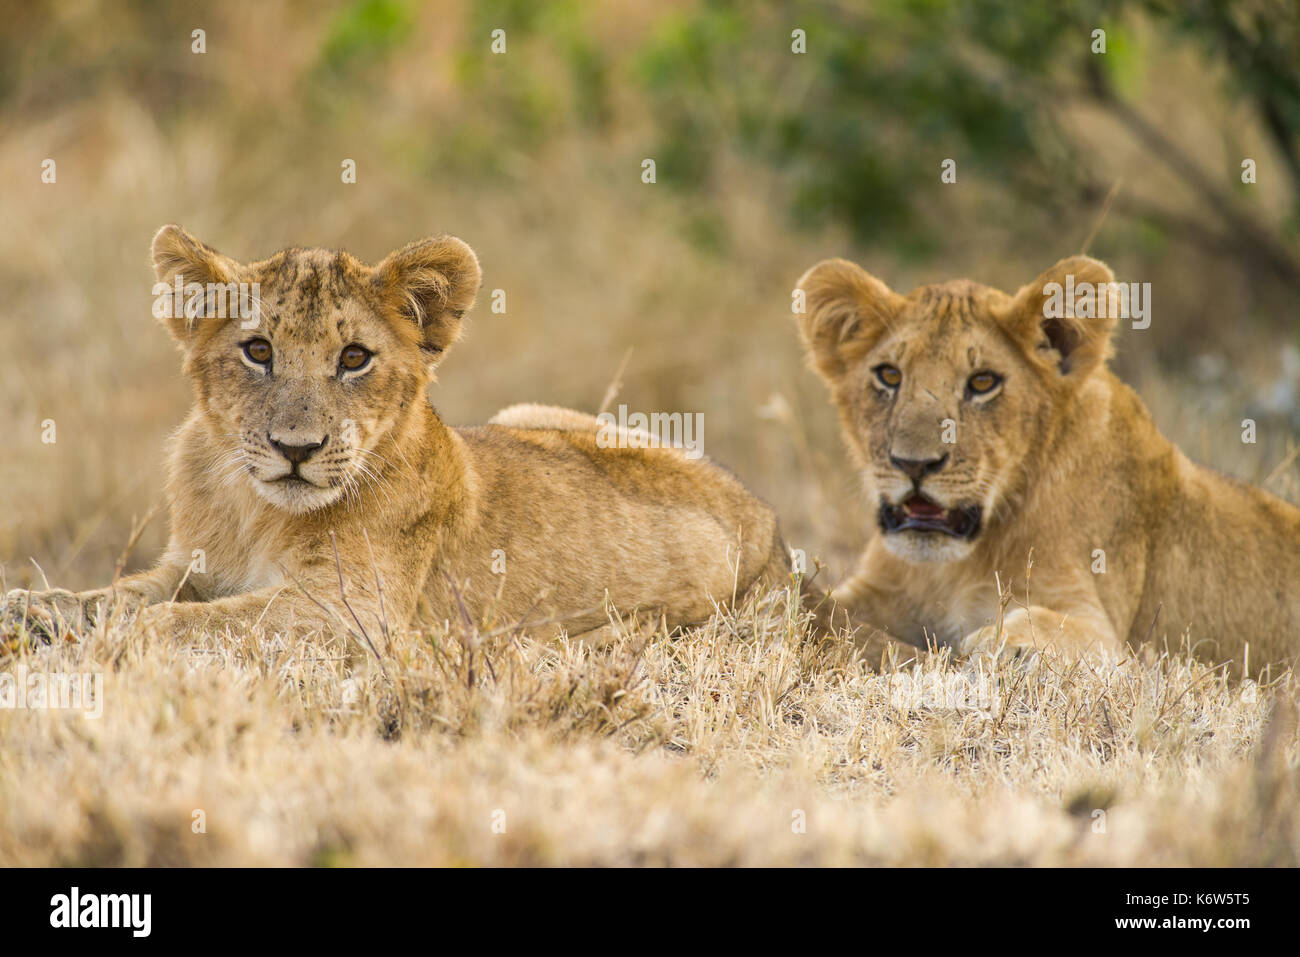 Lion cubs (Panthera leo) en attente de la mère au retour, Masai Mara, Kenya Banque D'Images